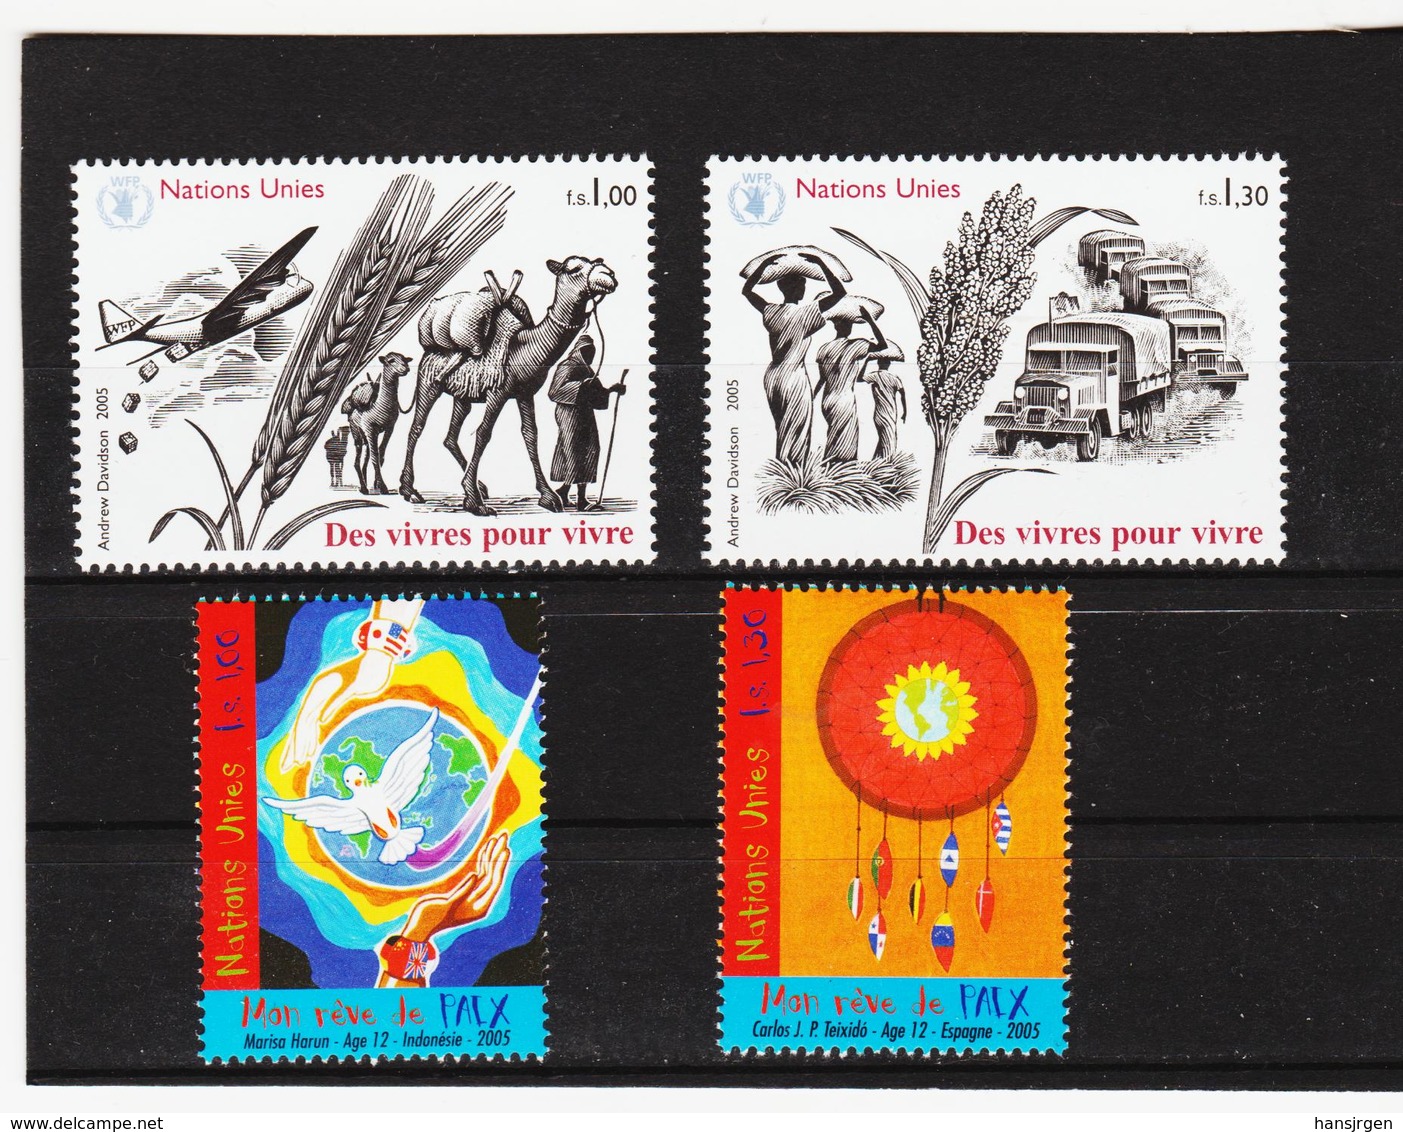 MOO723 UNO GENF 2005 Michl 526/29 ** Postfrisch SIEHE ABBILDUNG - Unused Stamps